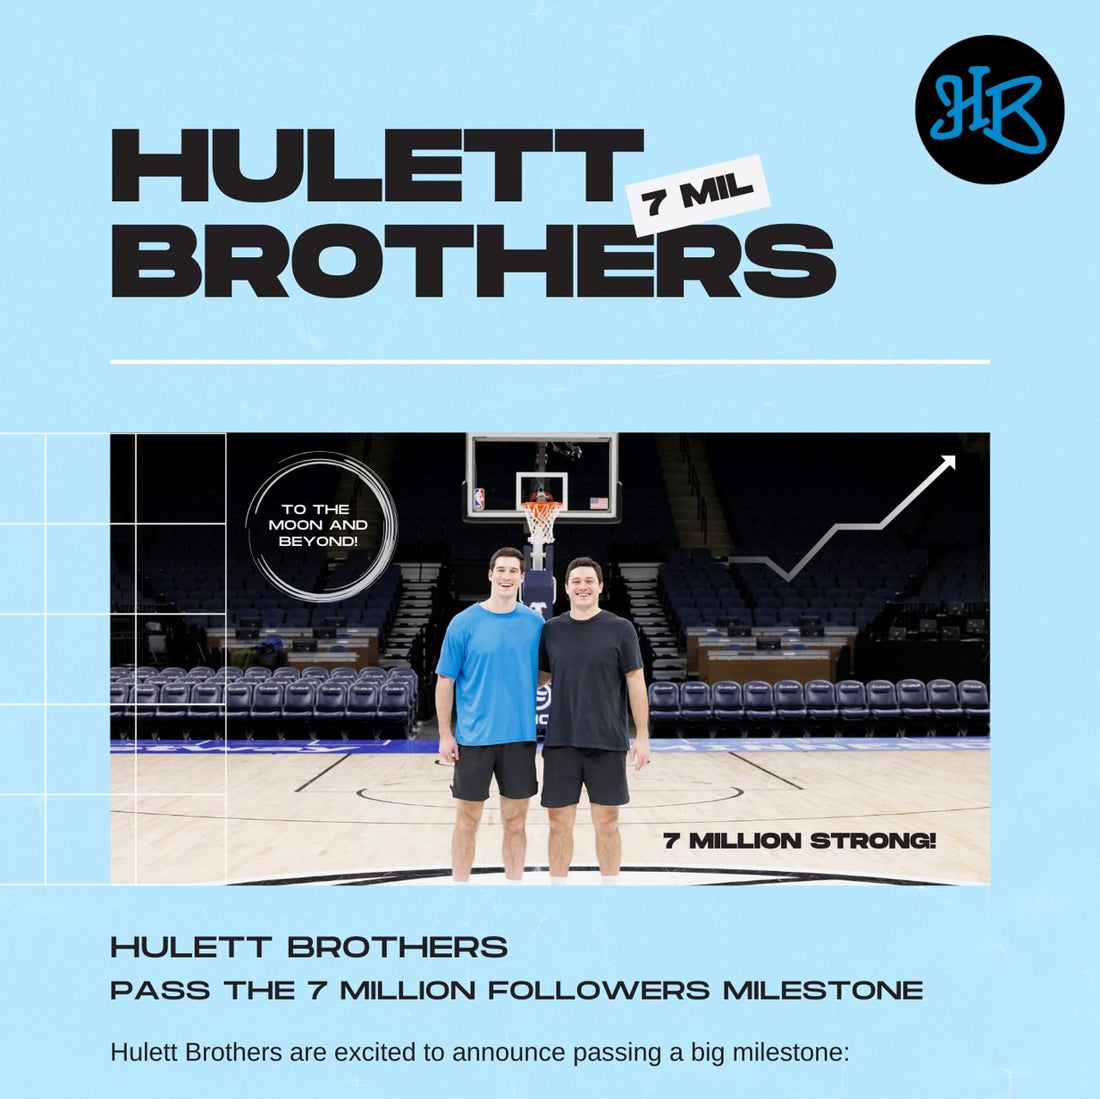 Hulett Brothers pass the 7 million followers milestone!